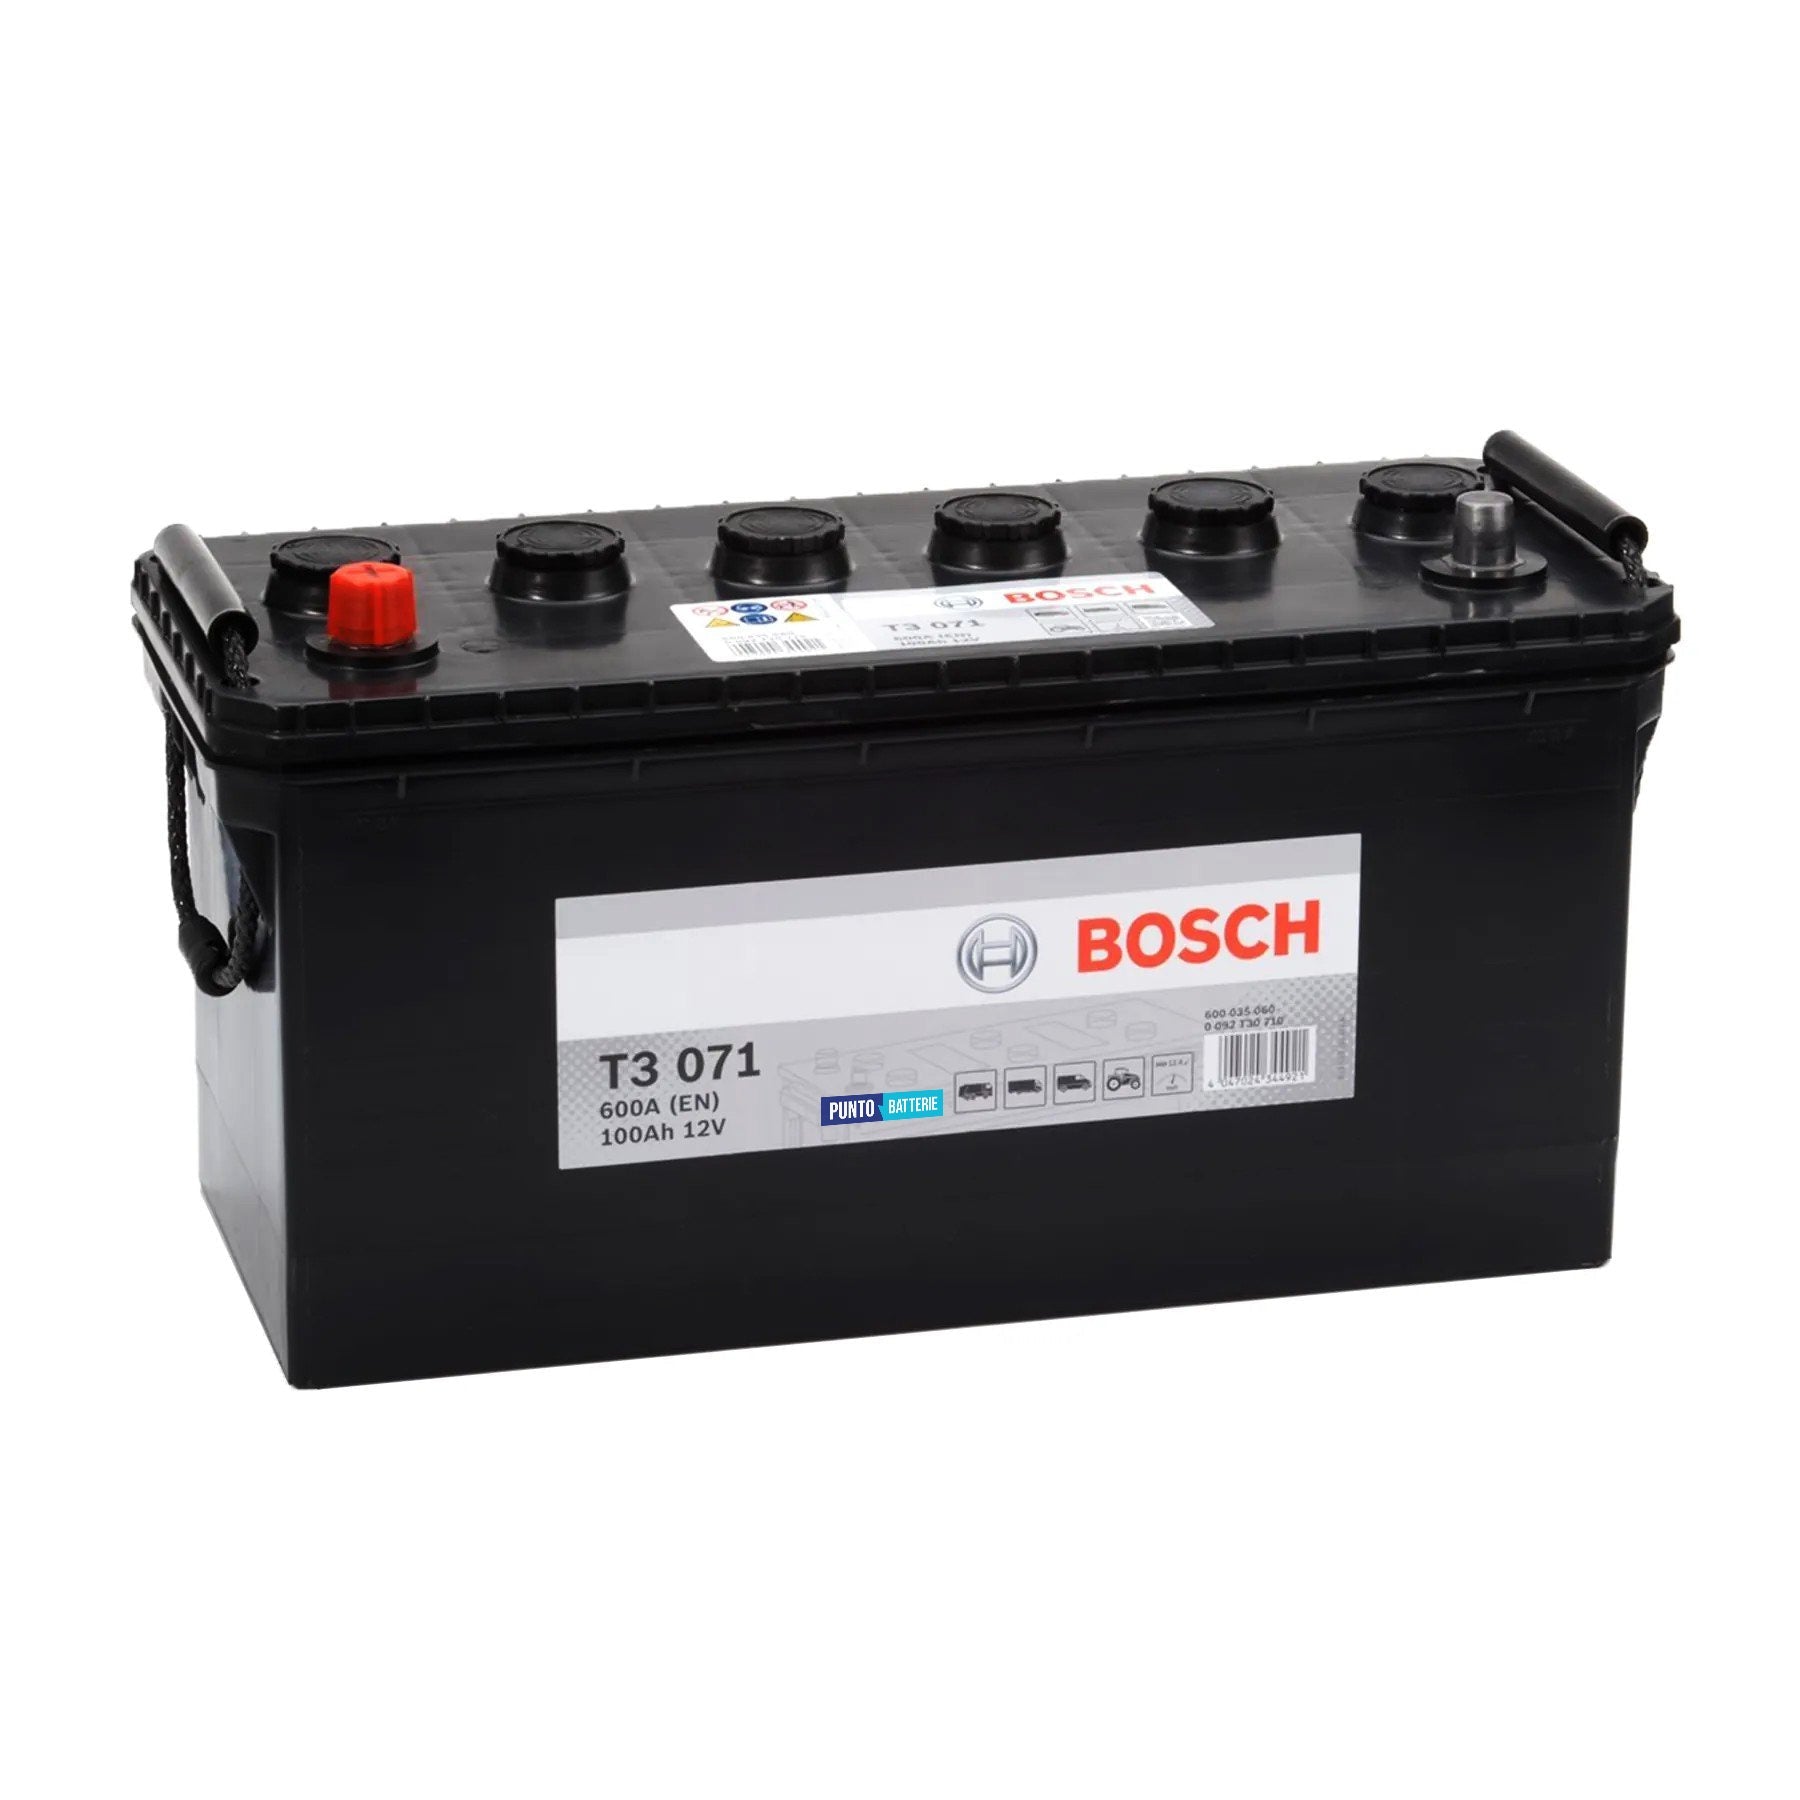 Batteria originale Bosch T3 T3071, dimensioni 412 x 175 x 219, polo positivo a sinistra, 12 volt, 100 amperora, 600 ampere. Batteria per camion e veicoli pesanti.